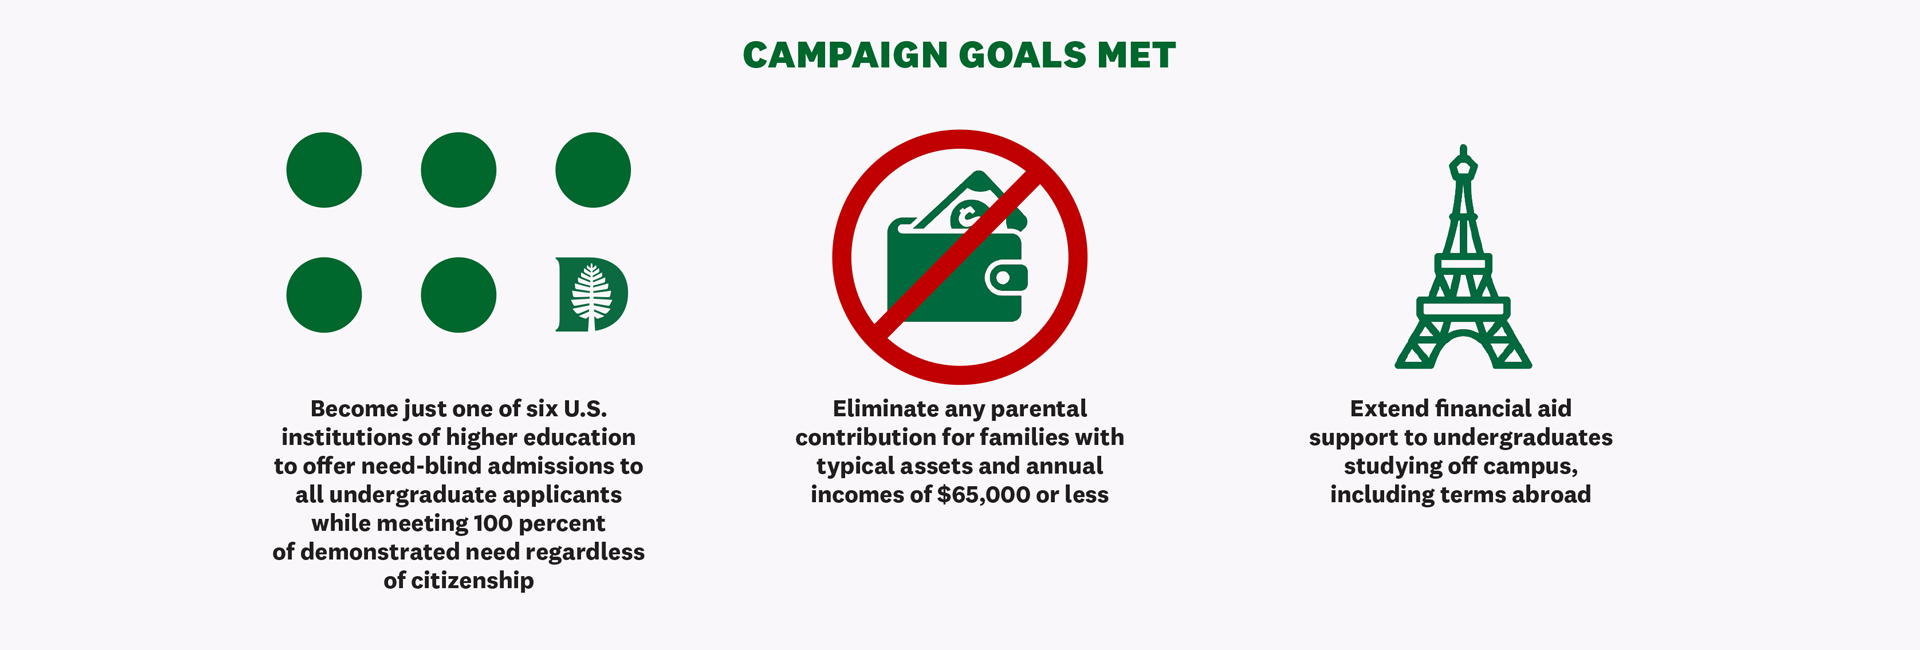 Campaign goals met infographic